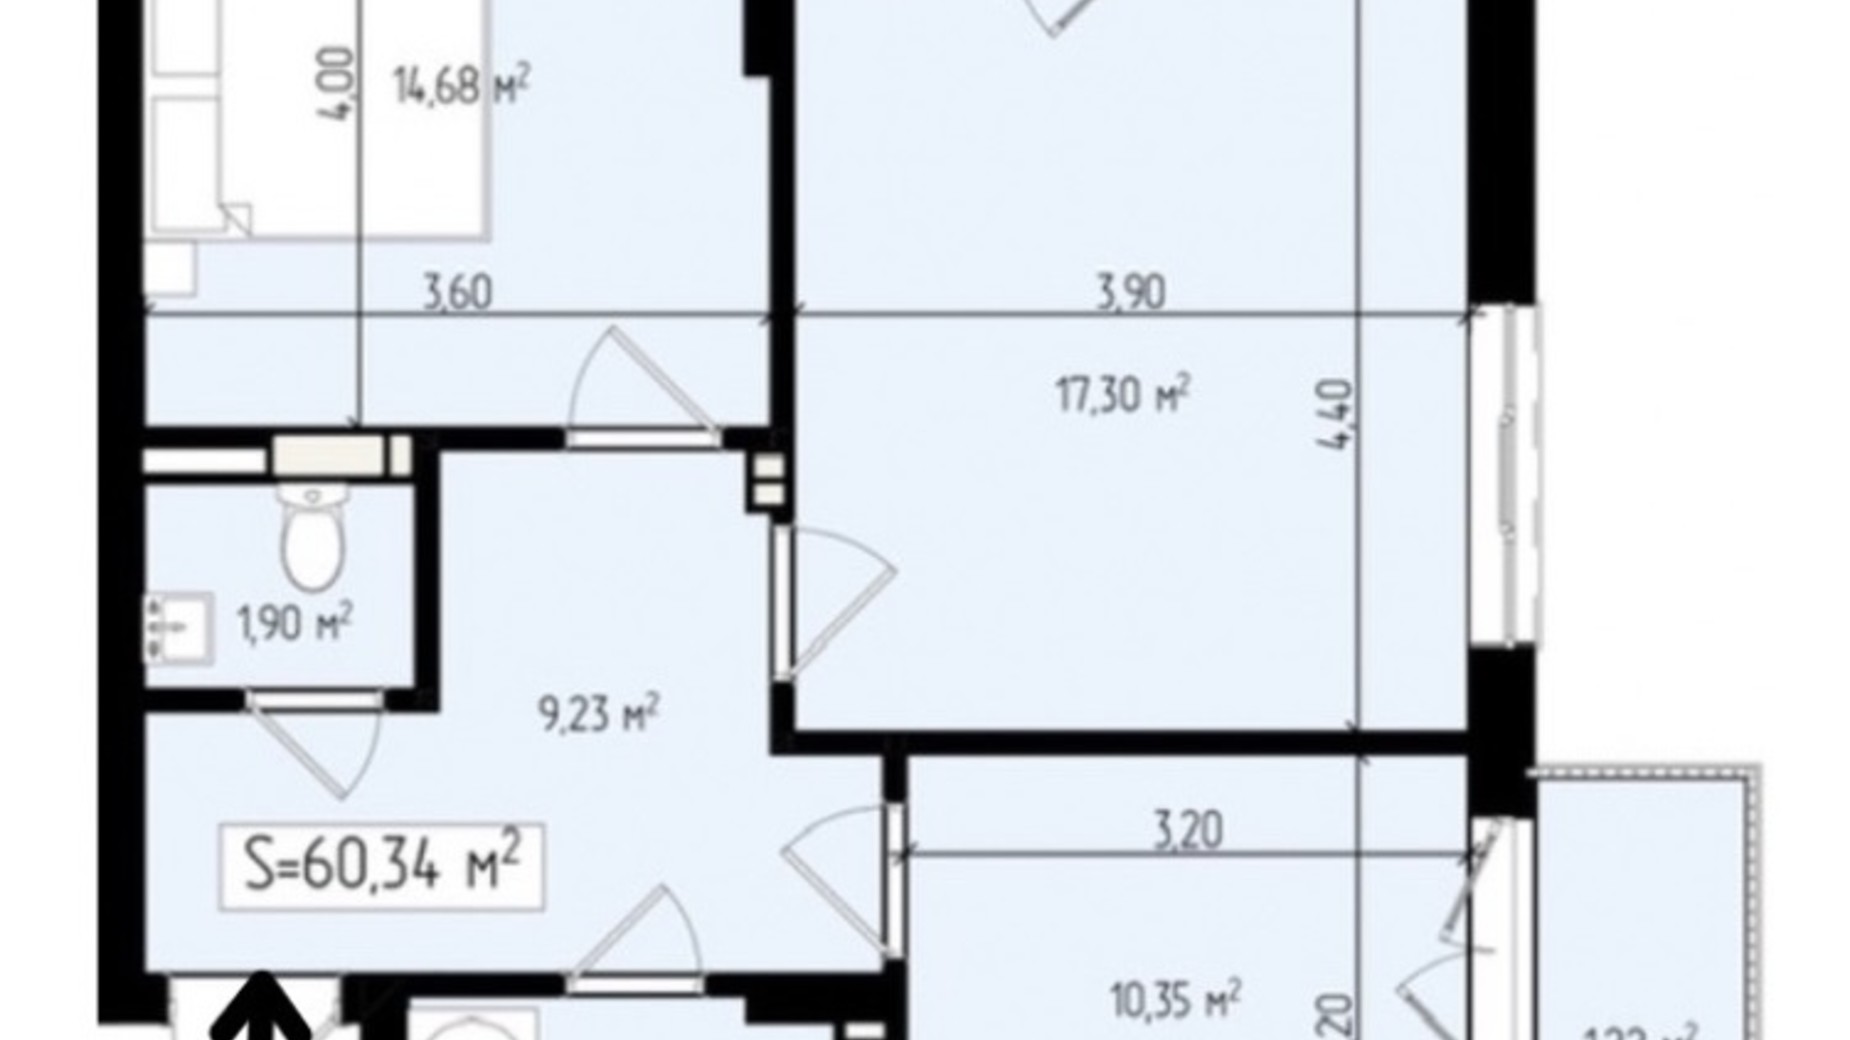 Планировка 2-комнатной квартиры в ЖК Mala Praha 60.34 м², фото 539587